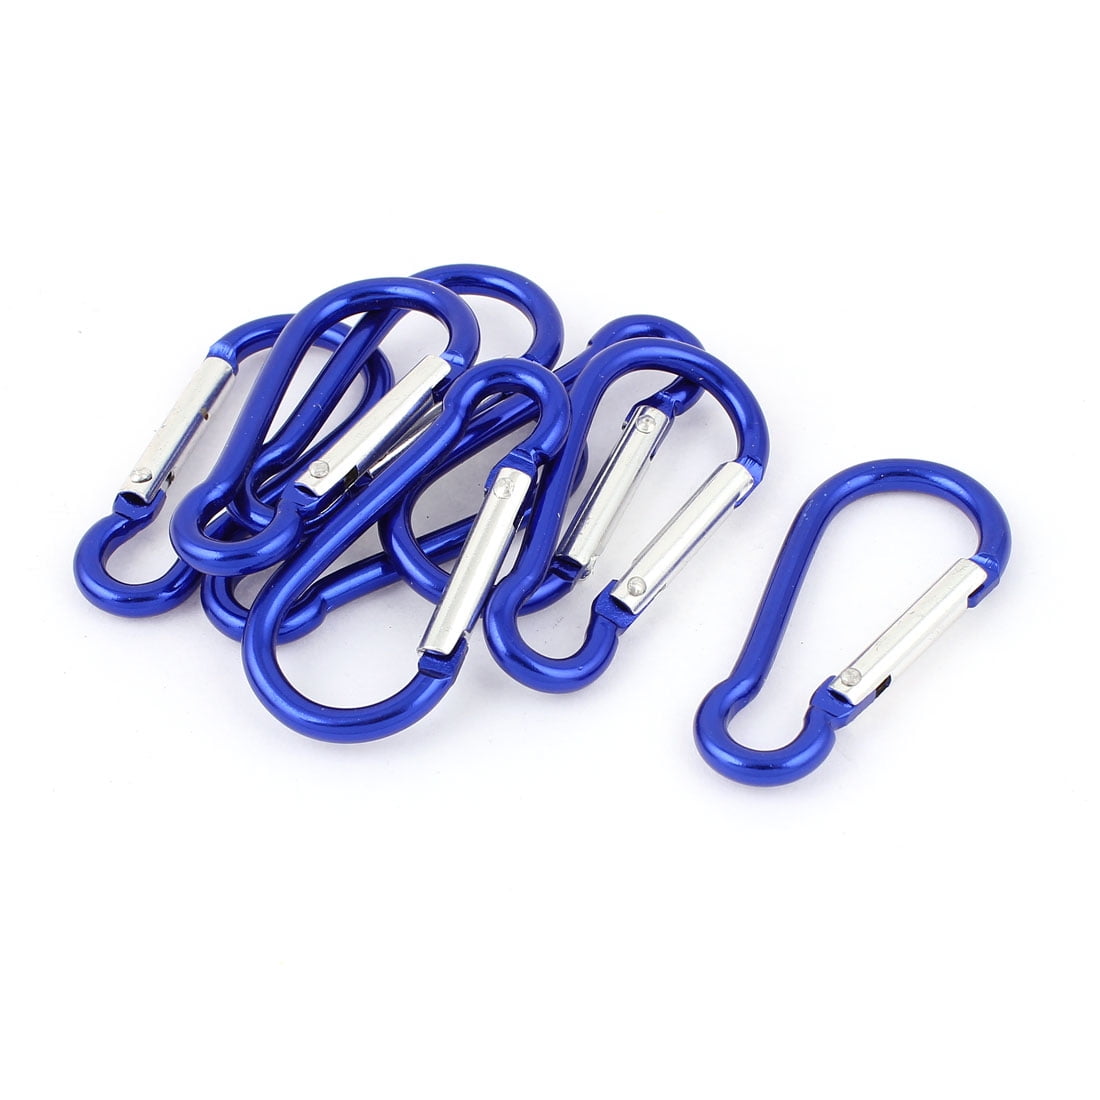 Purses Bags Handbag Key Organizer Clips Hook Hangers 8pcs Assorted Color